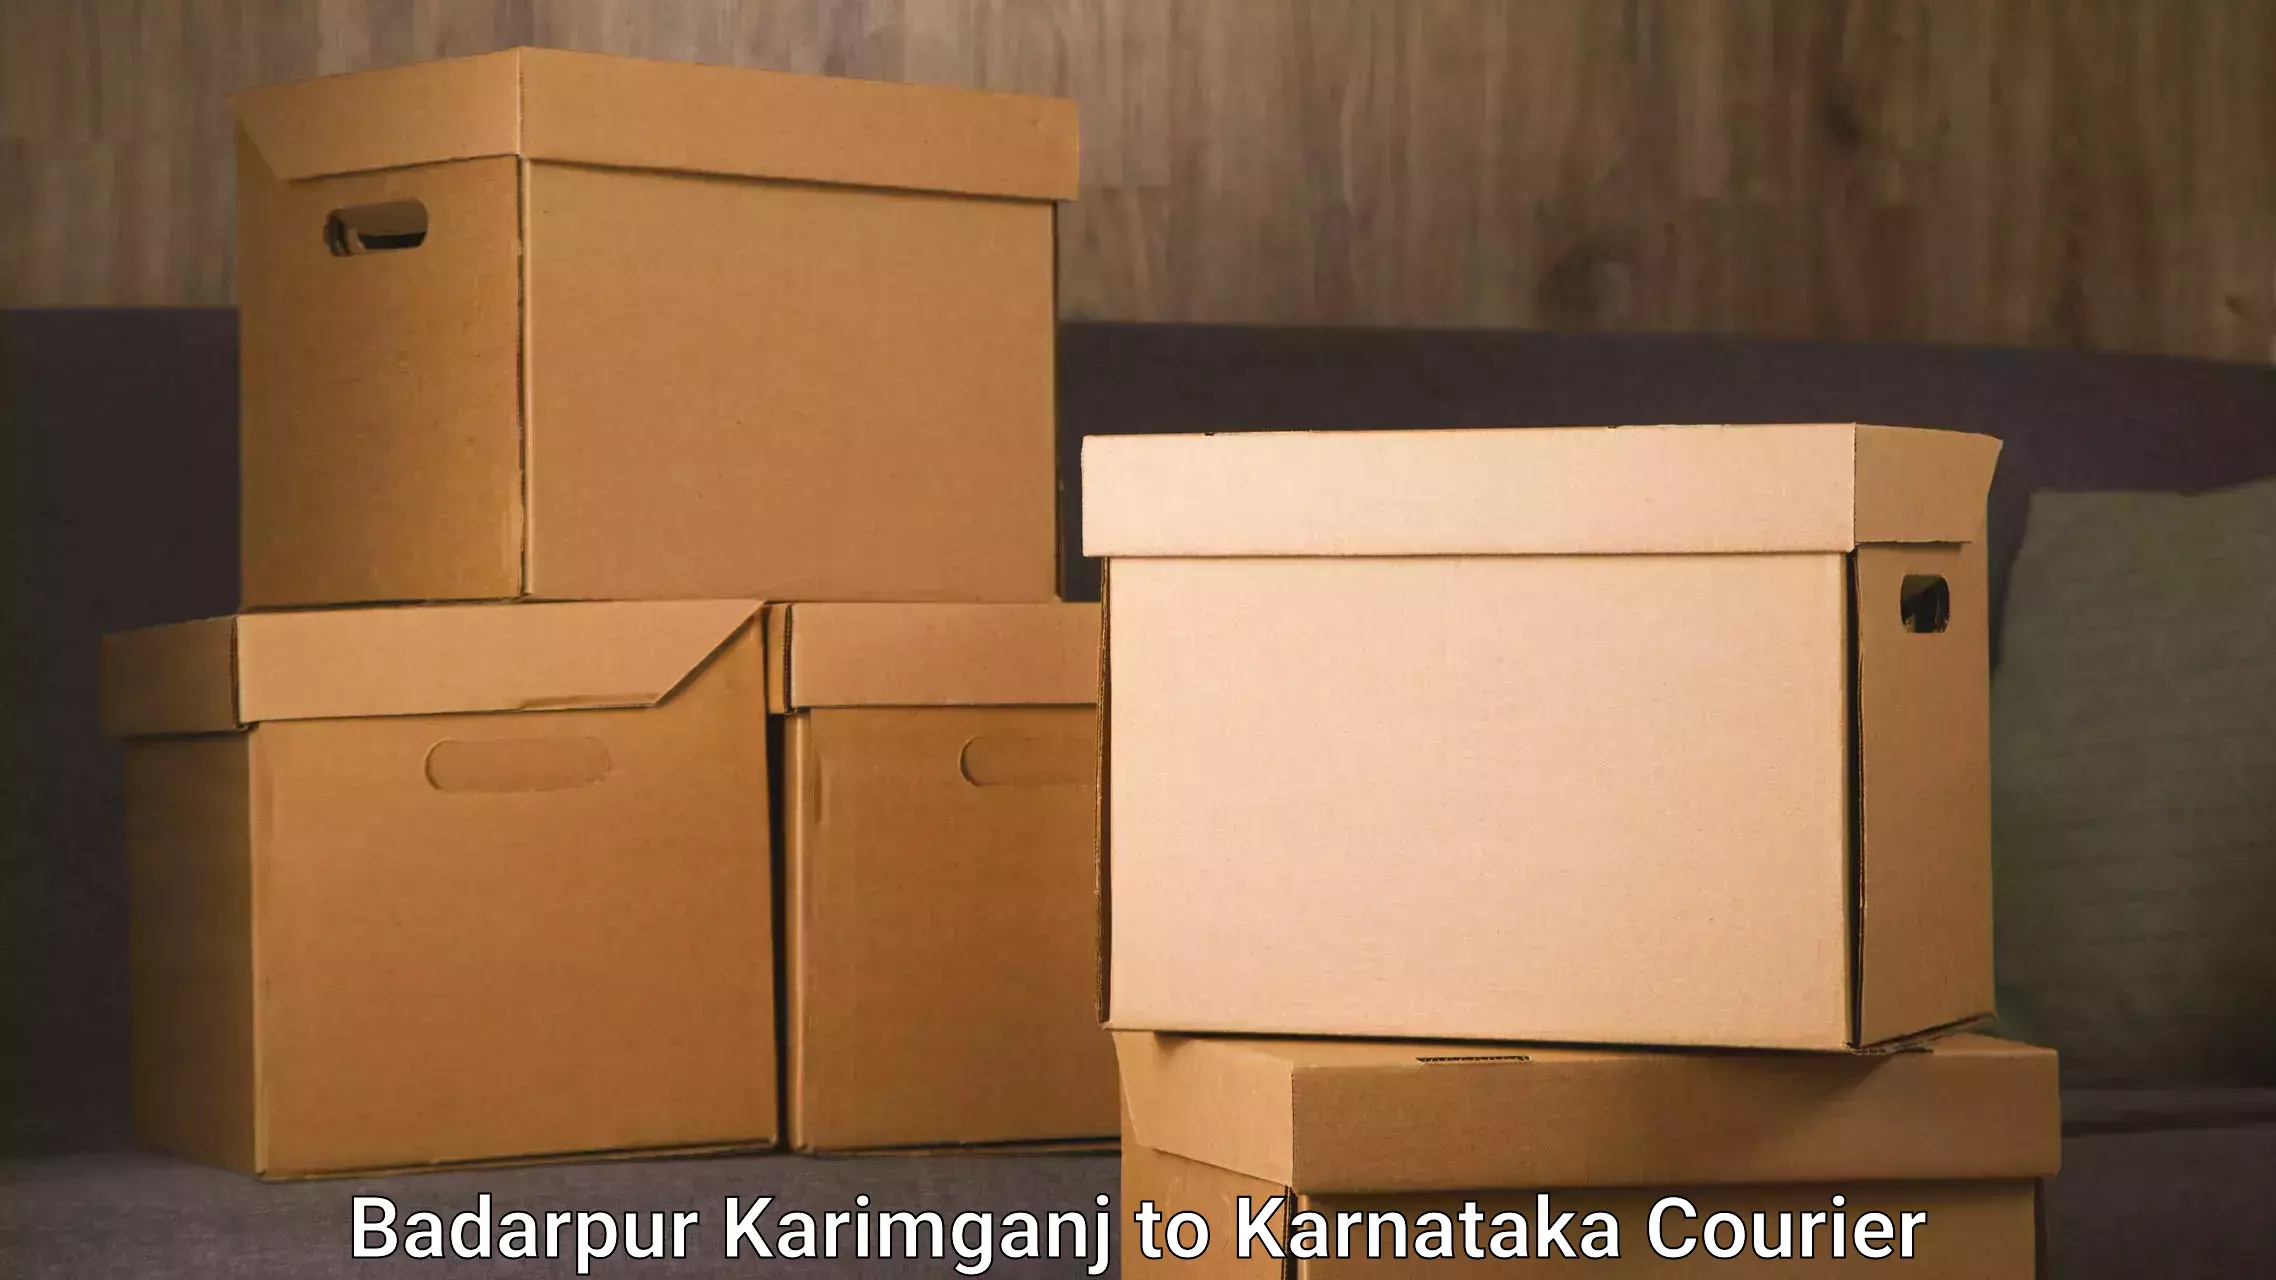 Same-day delivery solutions Badarpur Karimganj to Chikodi